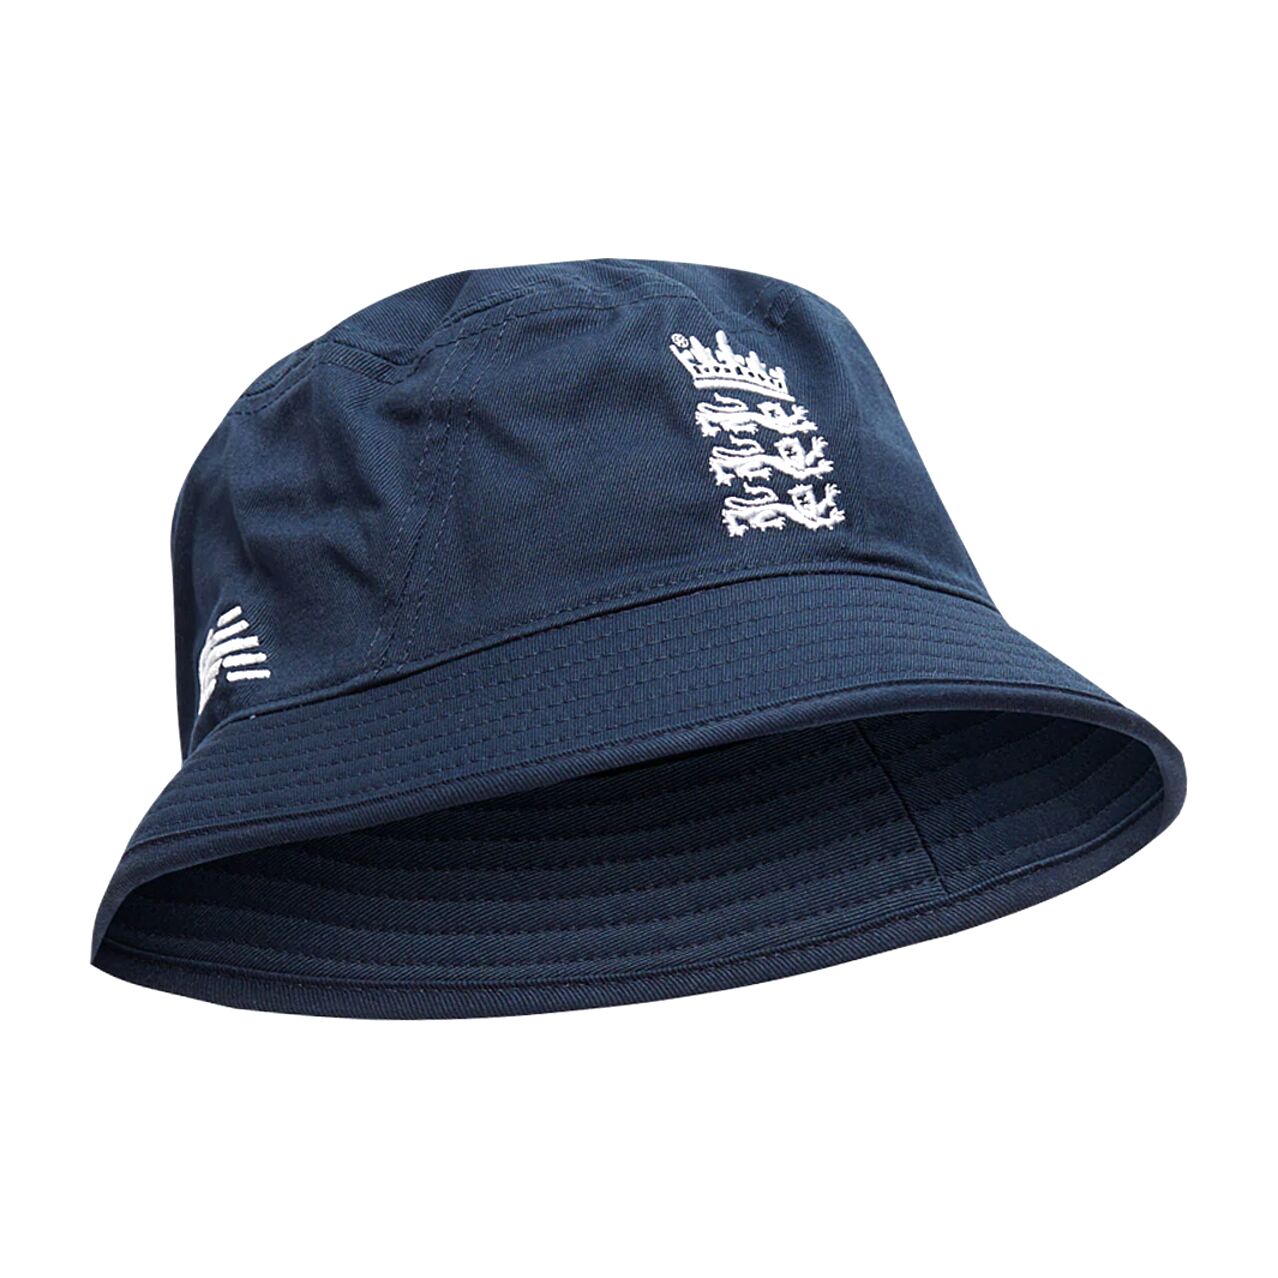 England Bucket Hat For Sale In Uk 69 Used England Bucket Hats